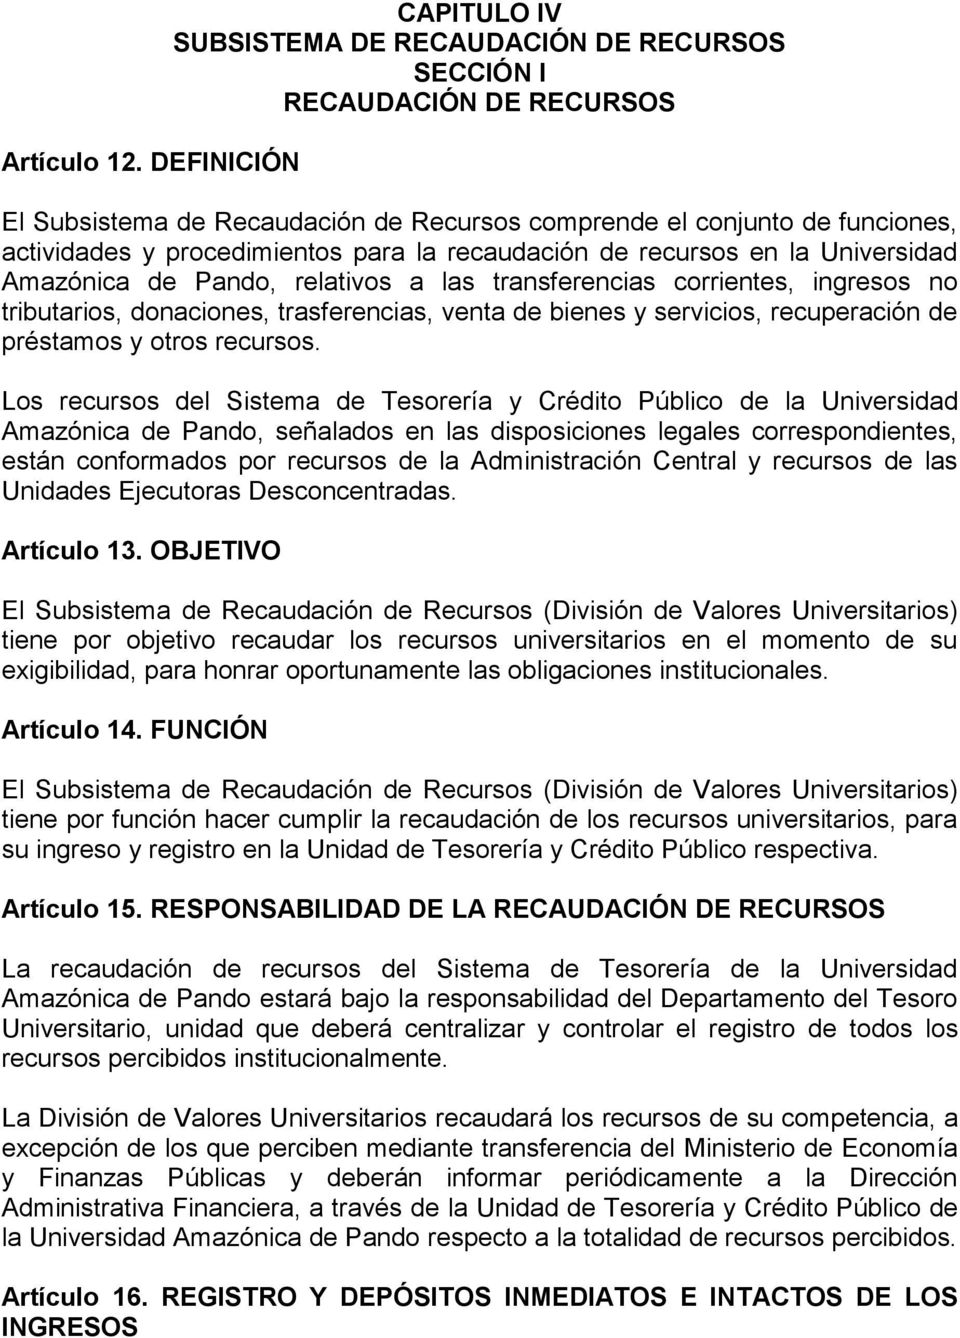 procedimientos para la recaudación de recursos en la Universidad Amazónica de Pando, relativos a las transferencias corrientes, ingresos no tributarios, donaciones, trasferencias, venta de bienes y